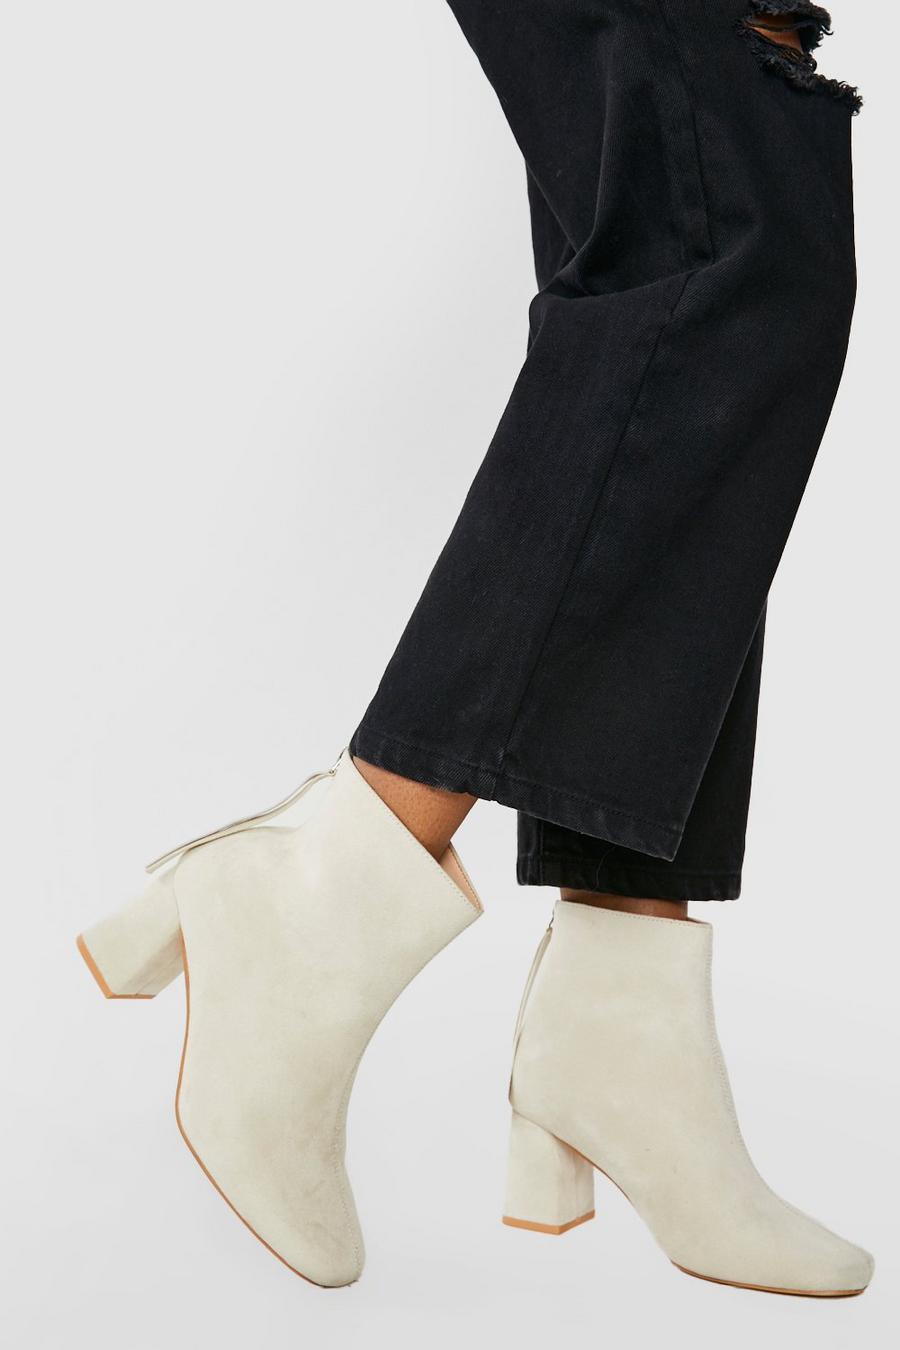 Breite Passform eckige Socken-Stiefel mit Fransen-Detail, Cream blanc